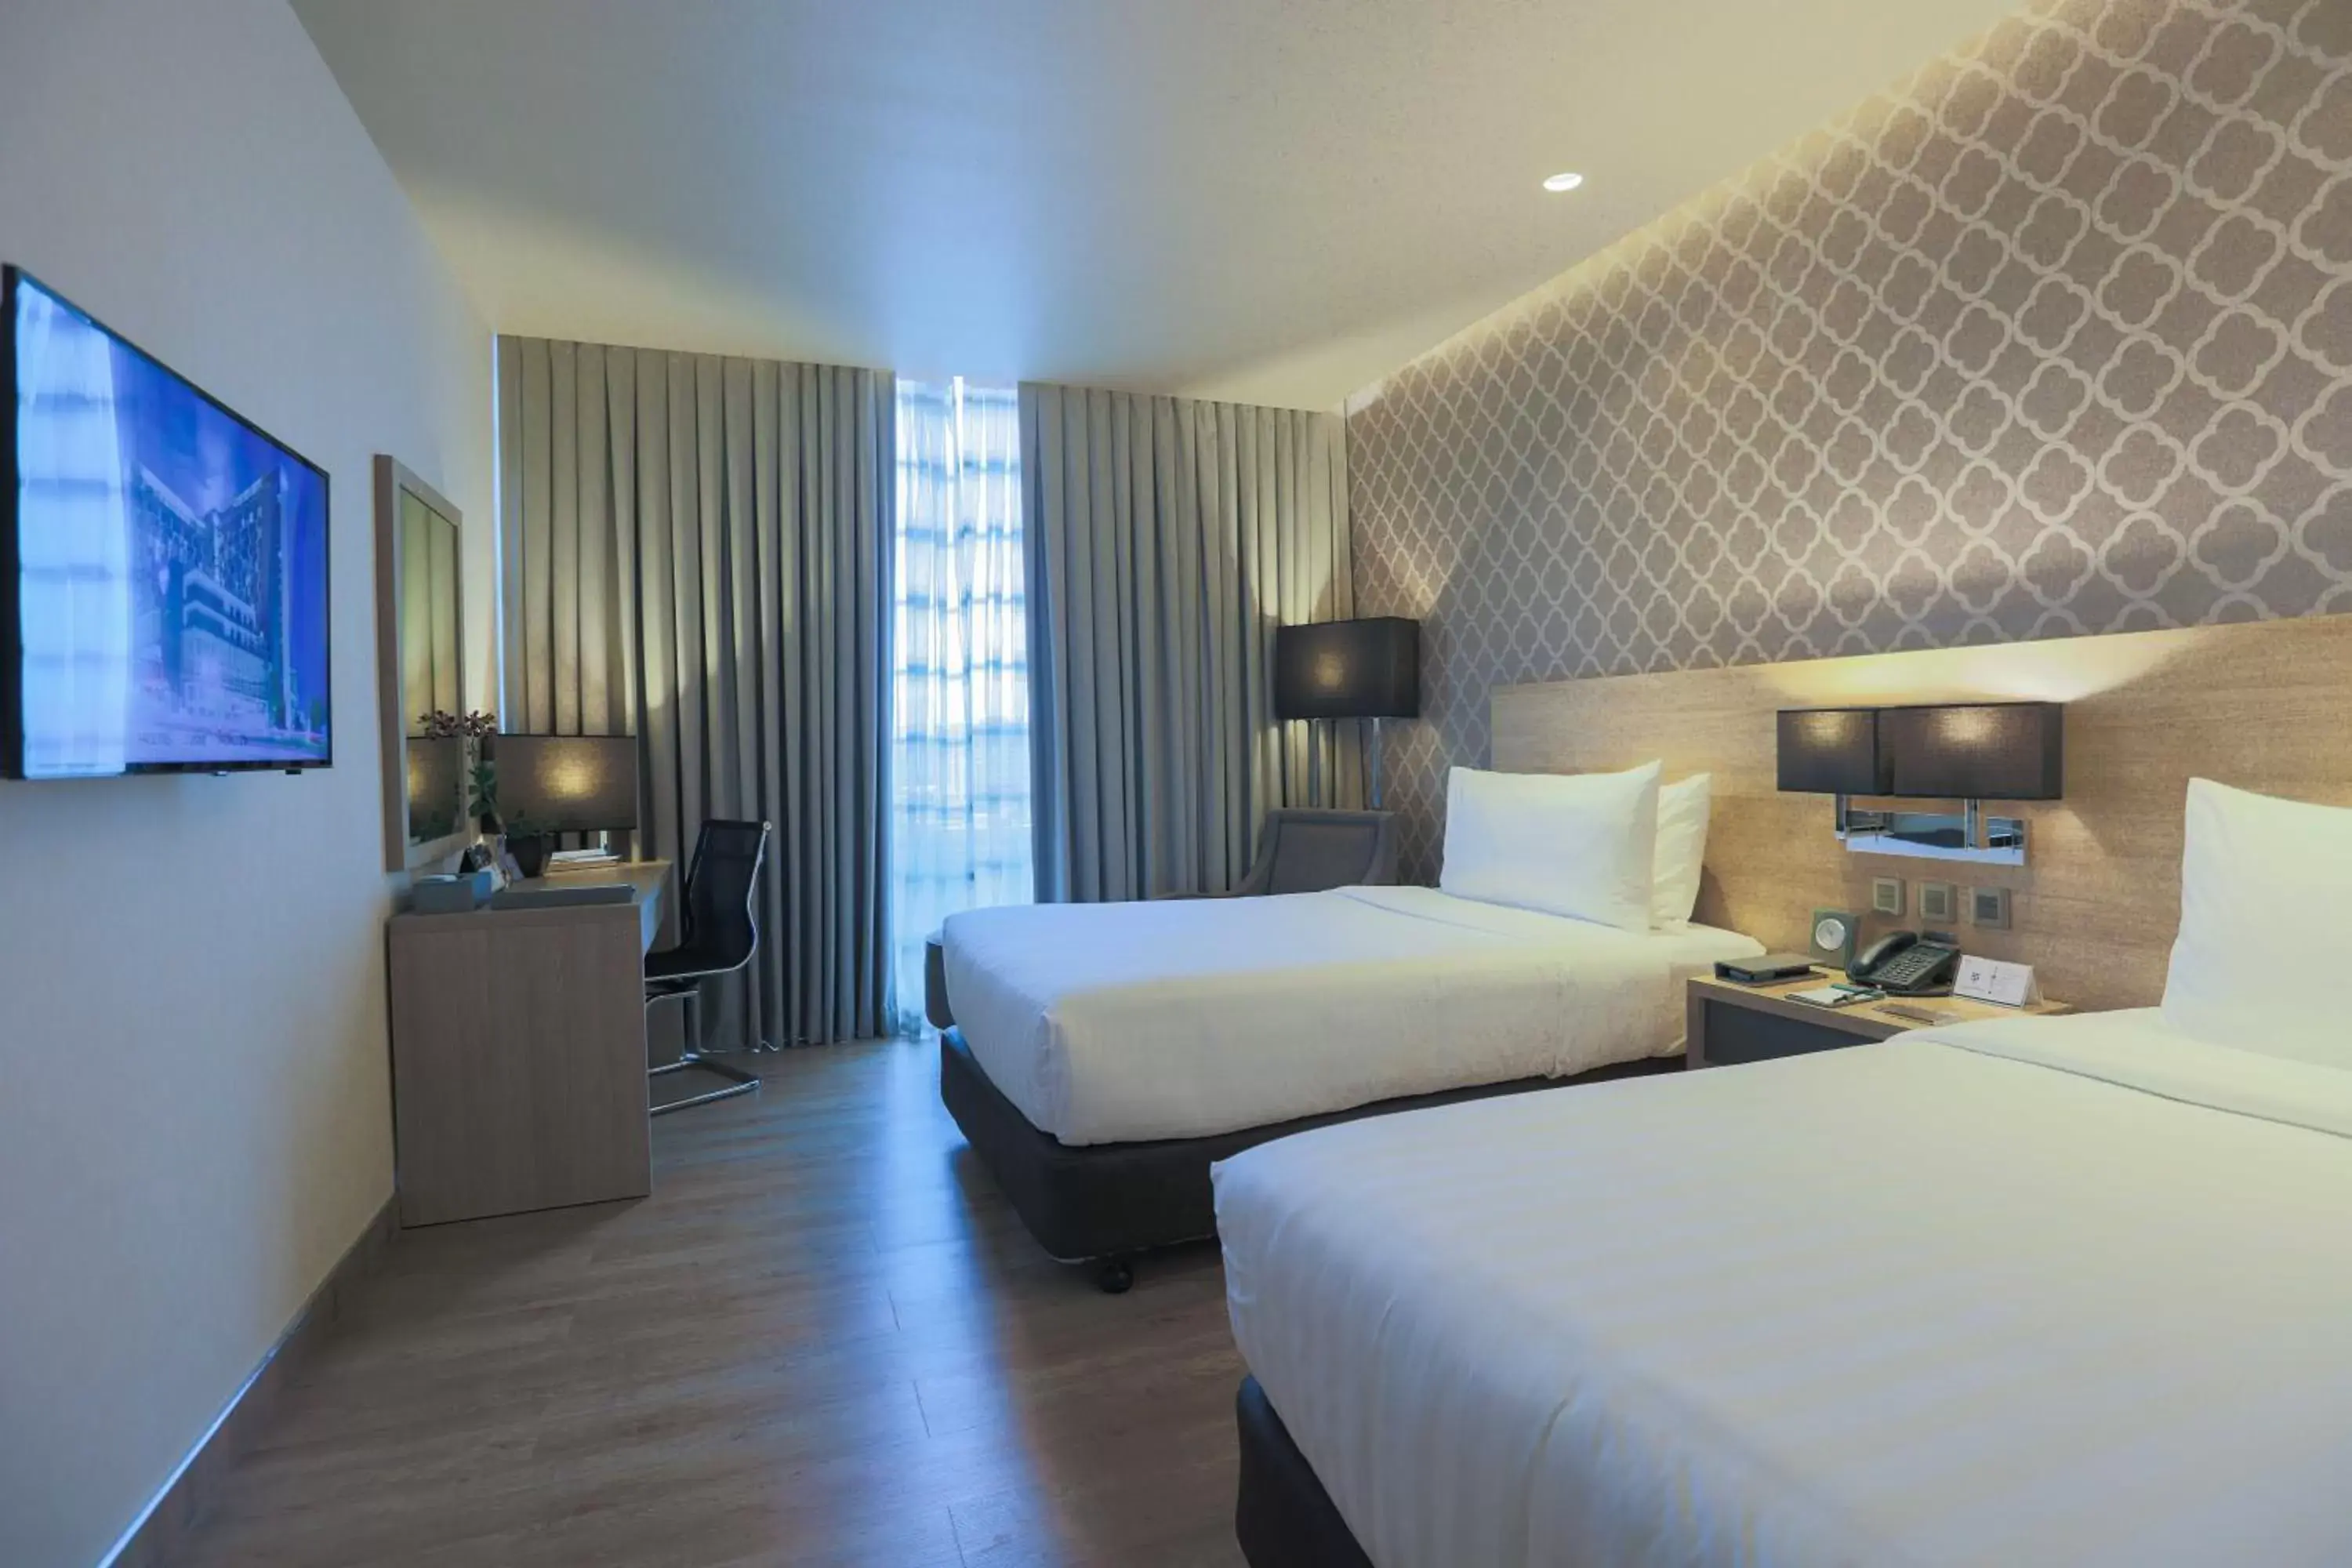 Photo of the whole room in bai Hotel Cebu